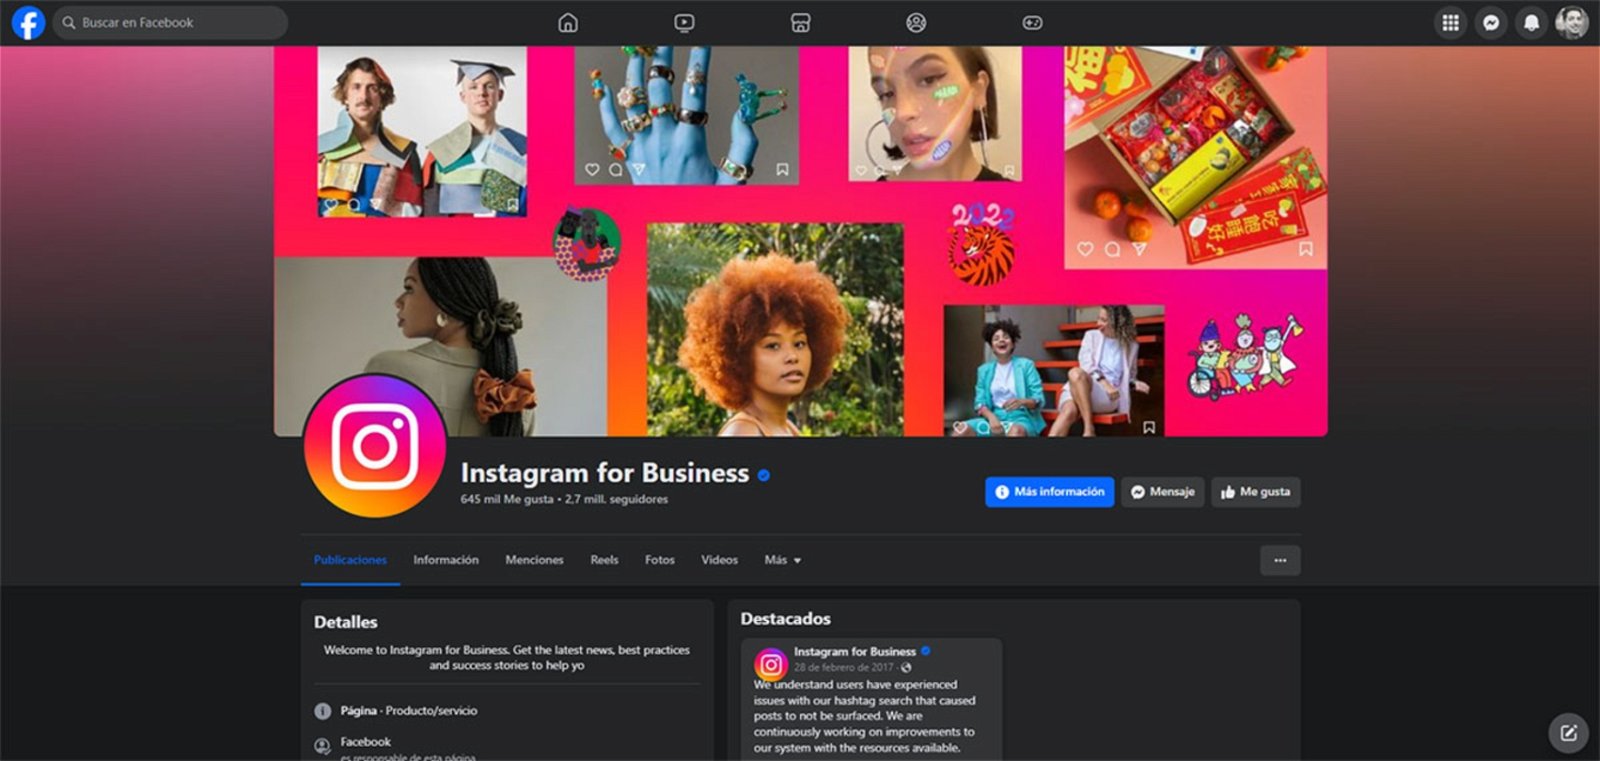 Hablar con soporte Instagram for Business